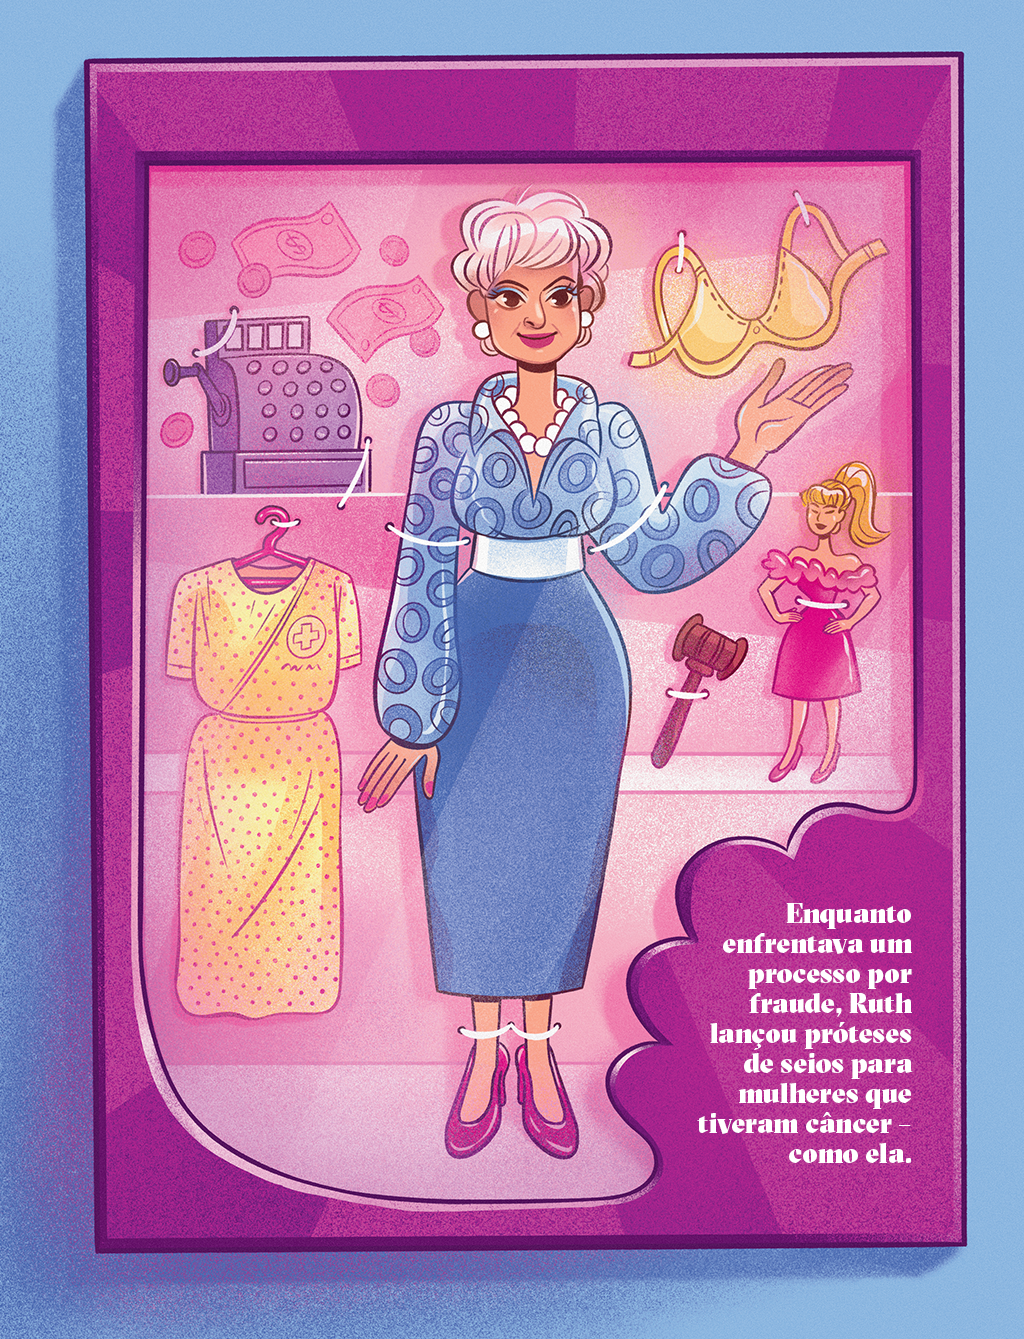 Ilustração de Ruth Handler mais velha, rodeada por uma camisola de hospital, uma caixa registradora, uma prótese, um martelo de juiz e uma Barbie.